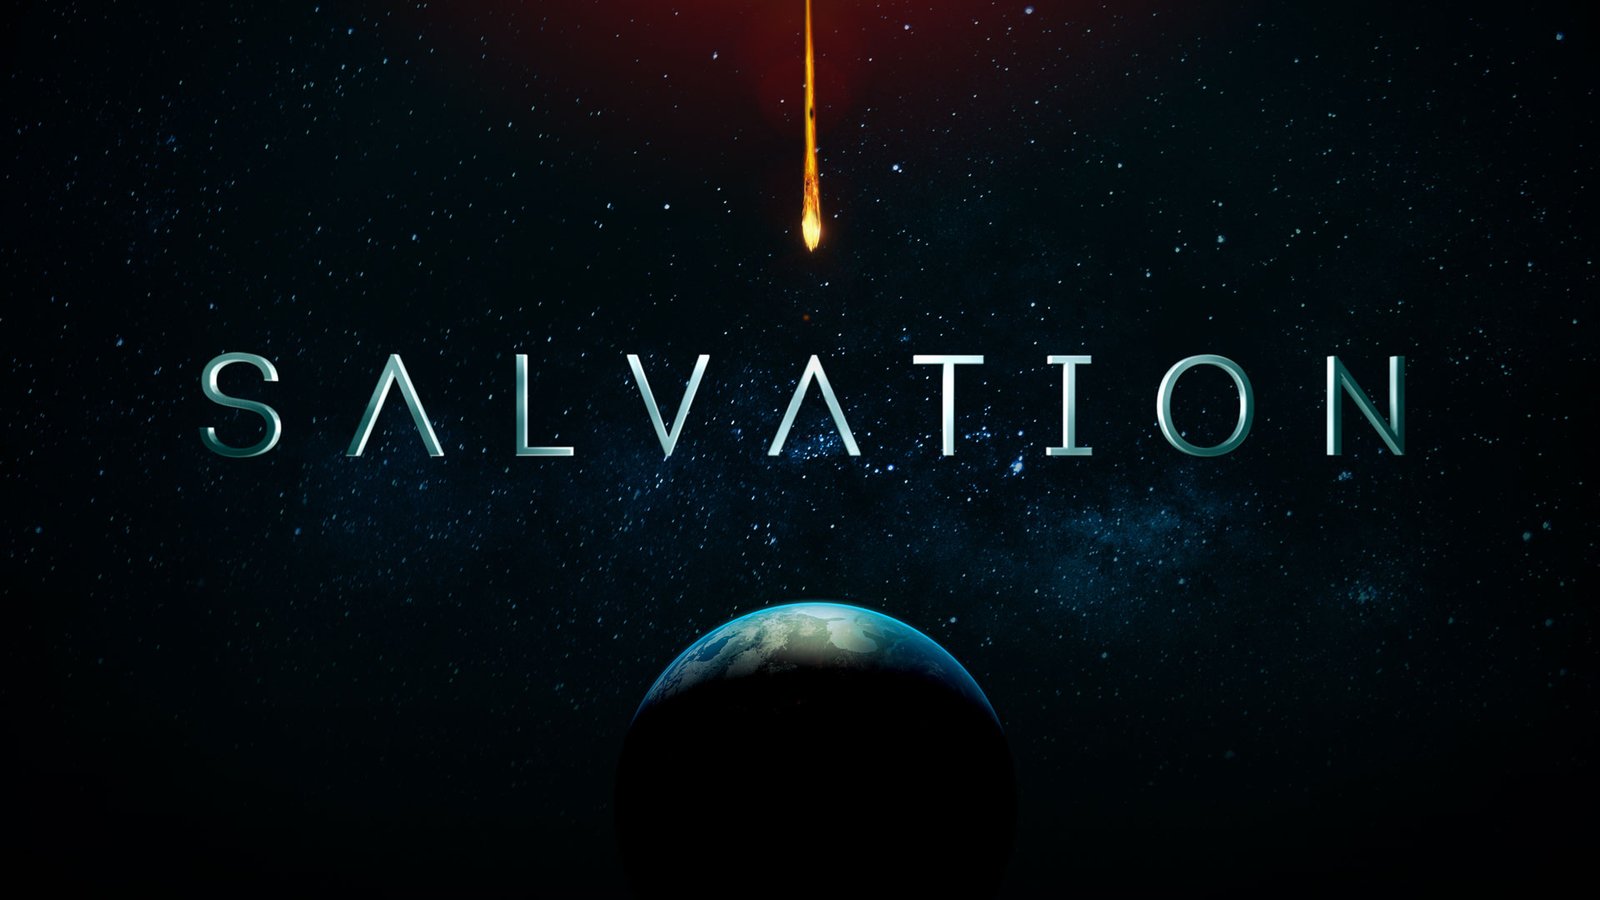 Спасение / Salvation (1 сезон)